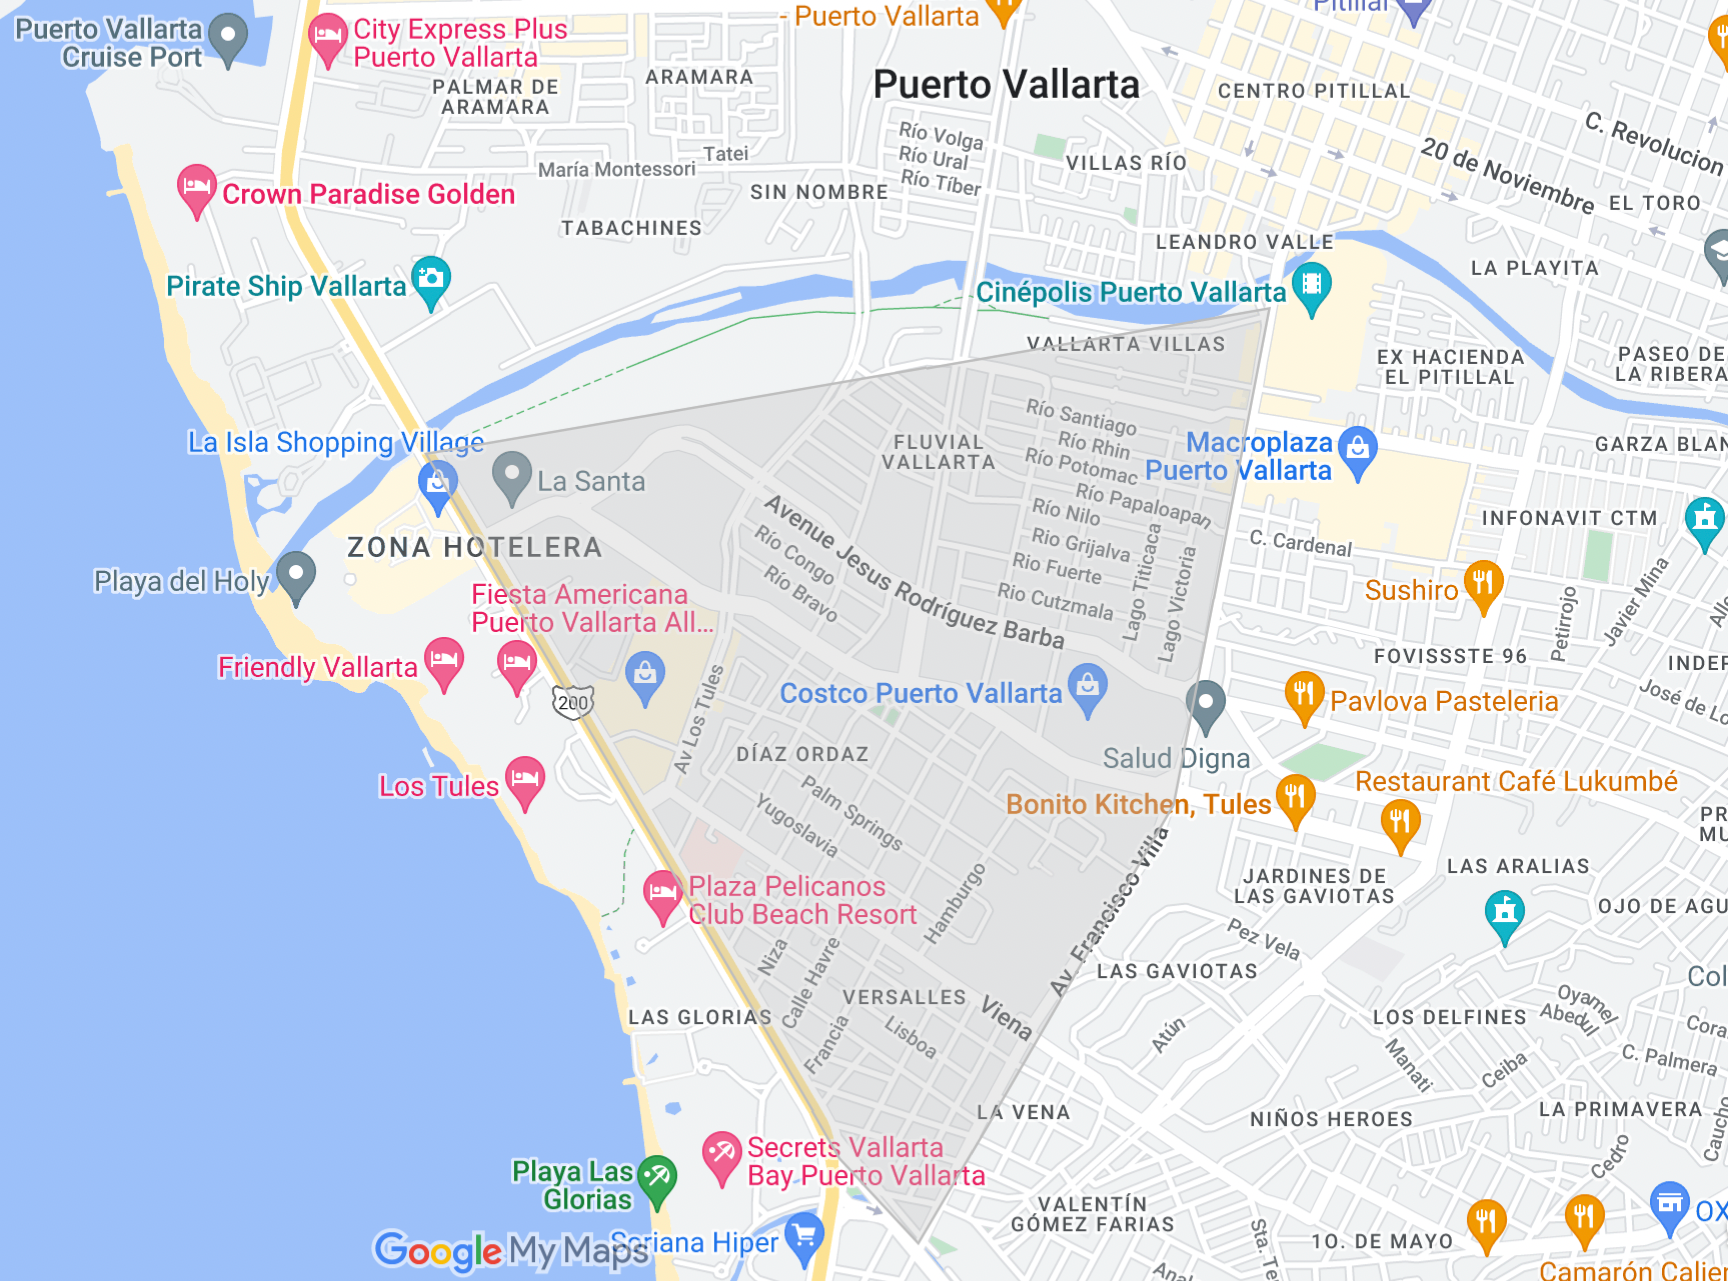 map of puerto vallarta real estate popular regions